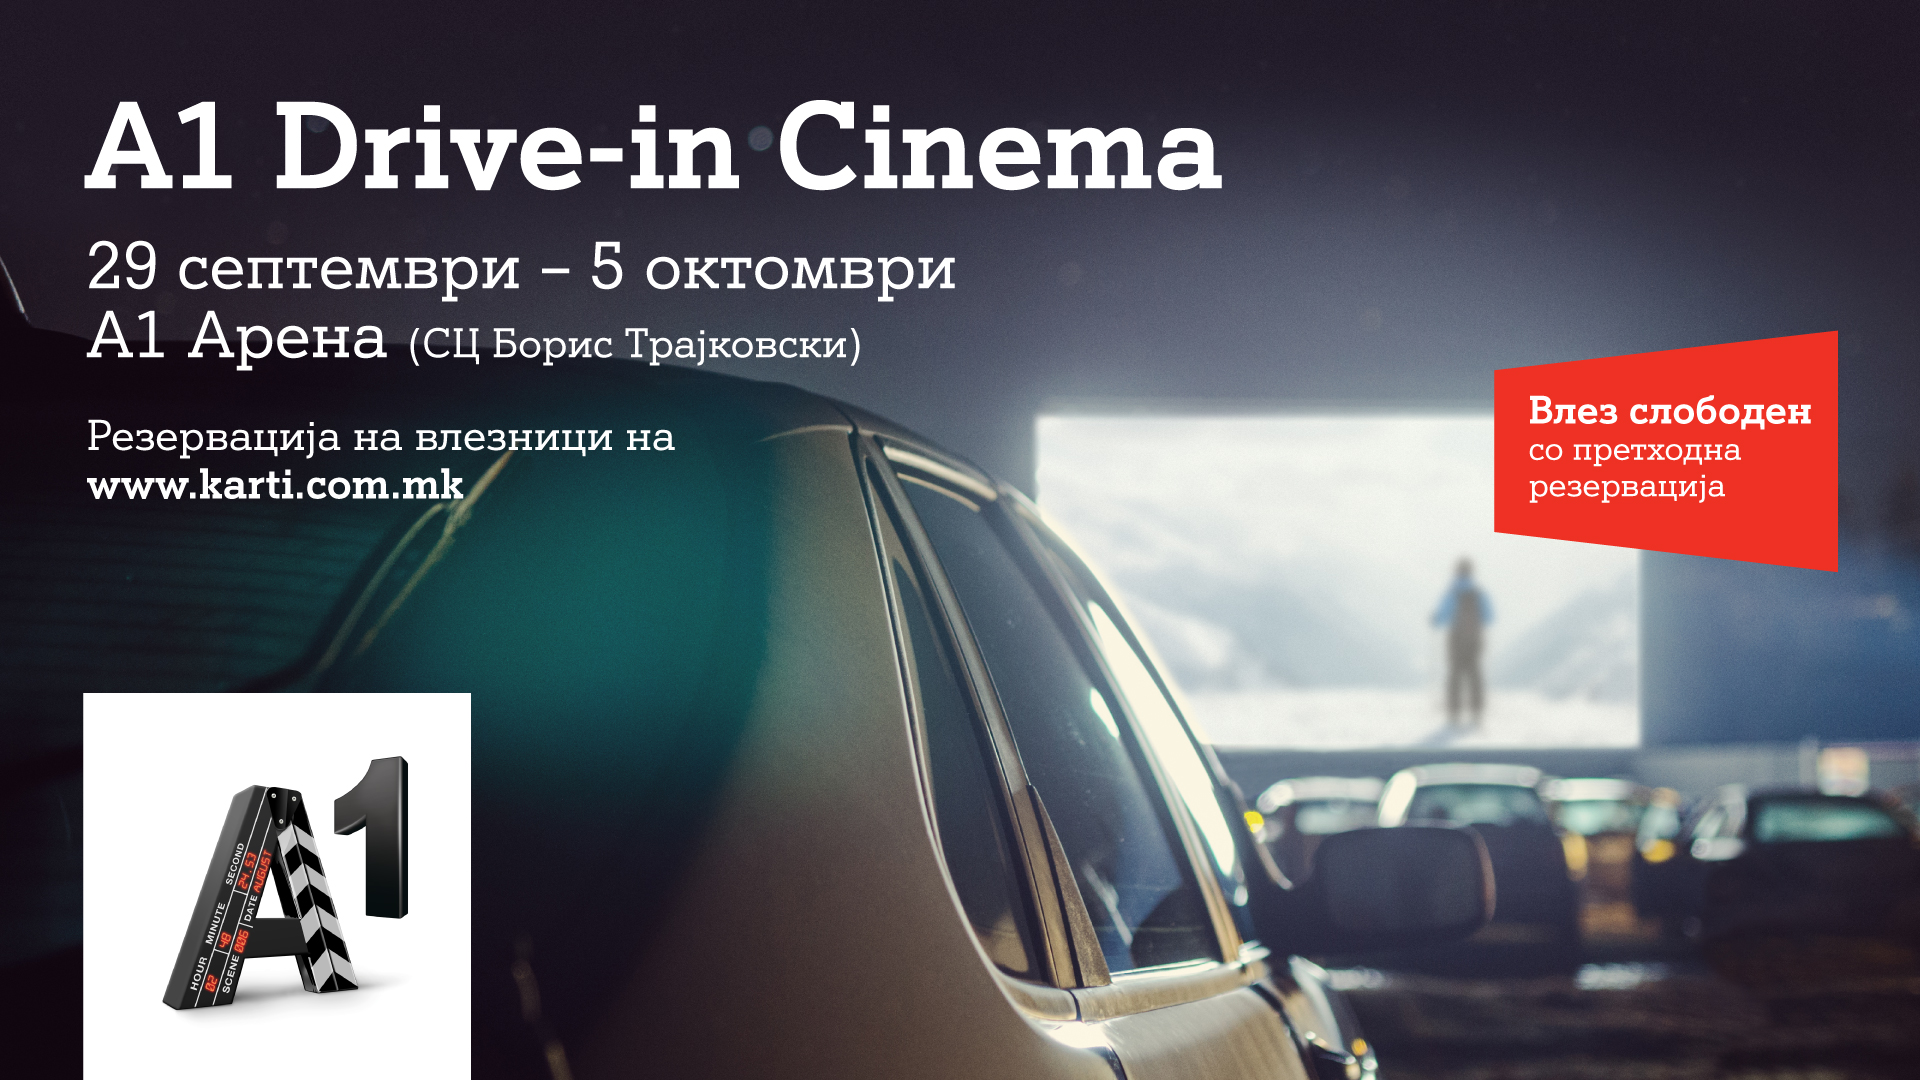 А1 Македонија со уникатен настан за љубителите на филмот: A1 Drive-in кино од 29 септември до 5 октомври 